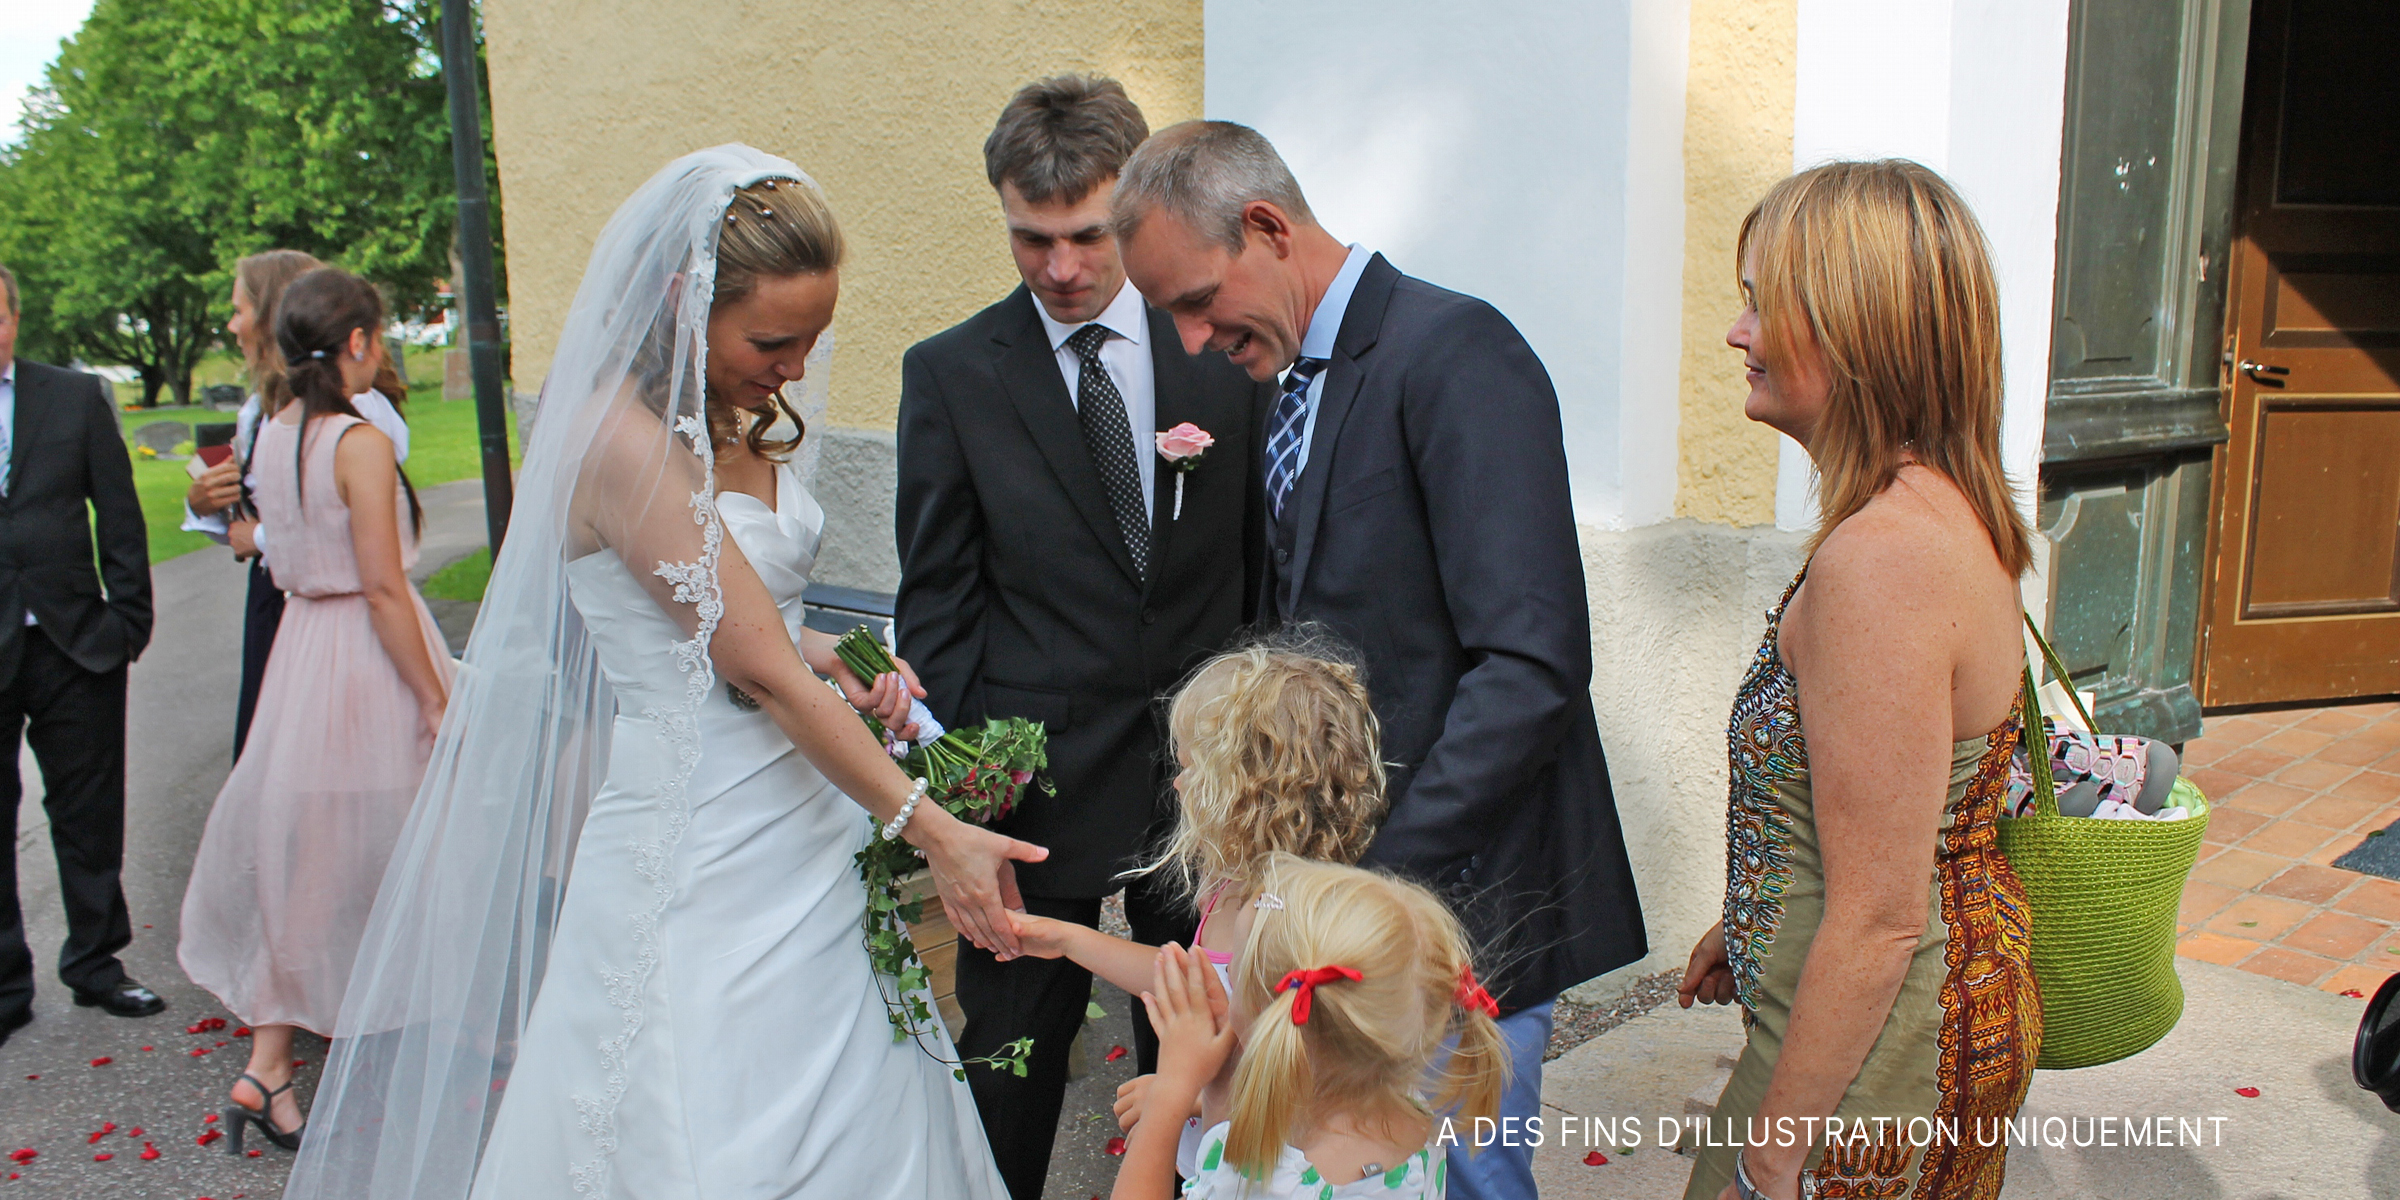 Une mariée heureuse avec ses demoiselles d'honneur le jour de son mariage. | Source : Flickr/sebilden (CC BY 2.0)